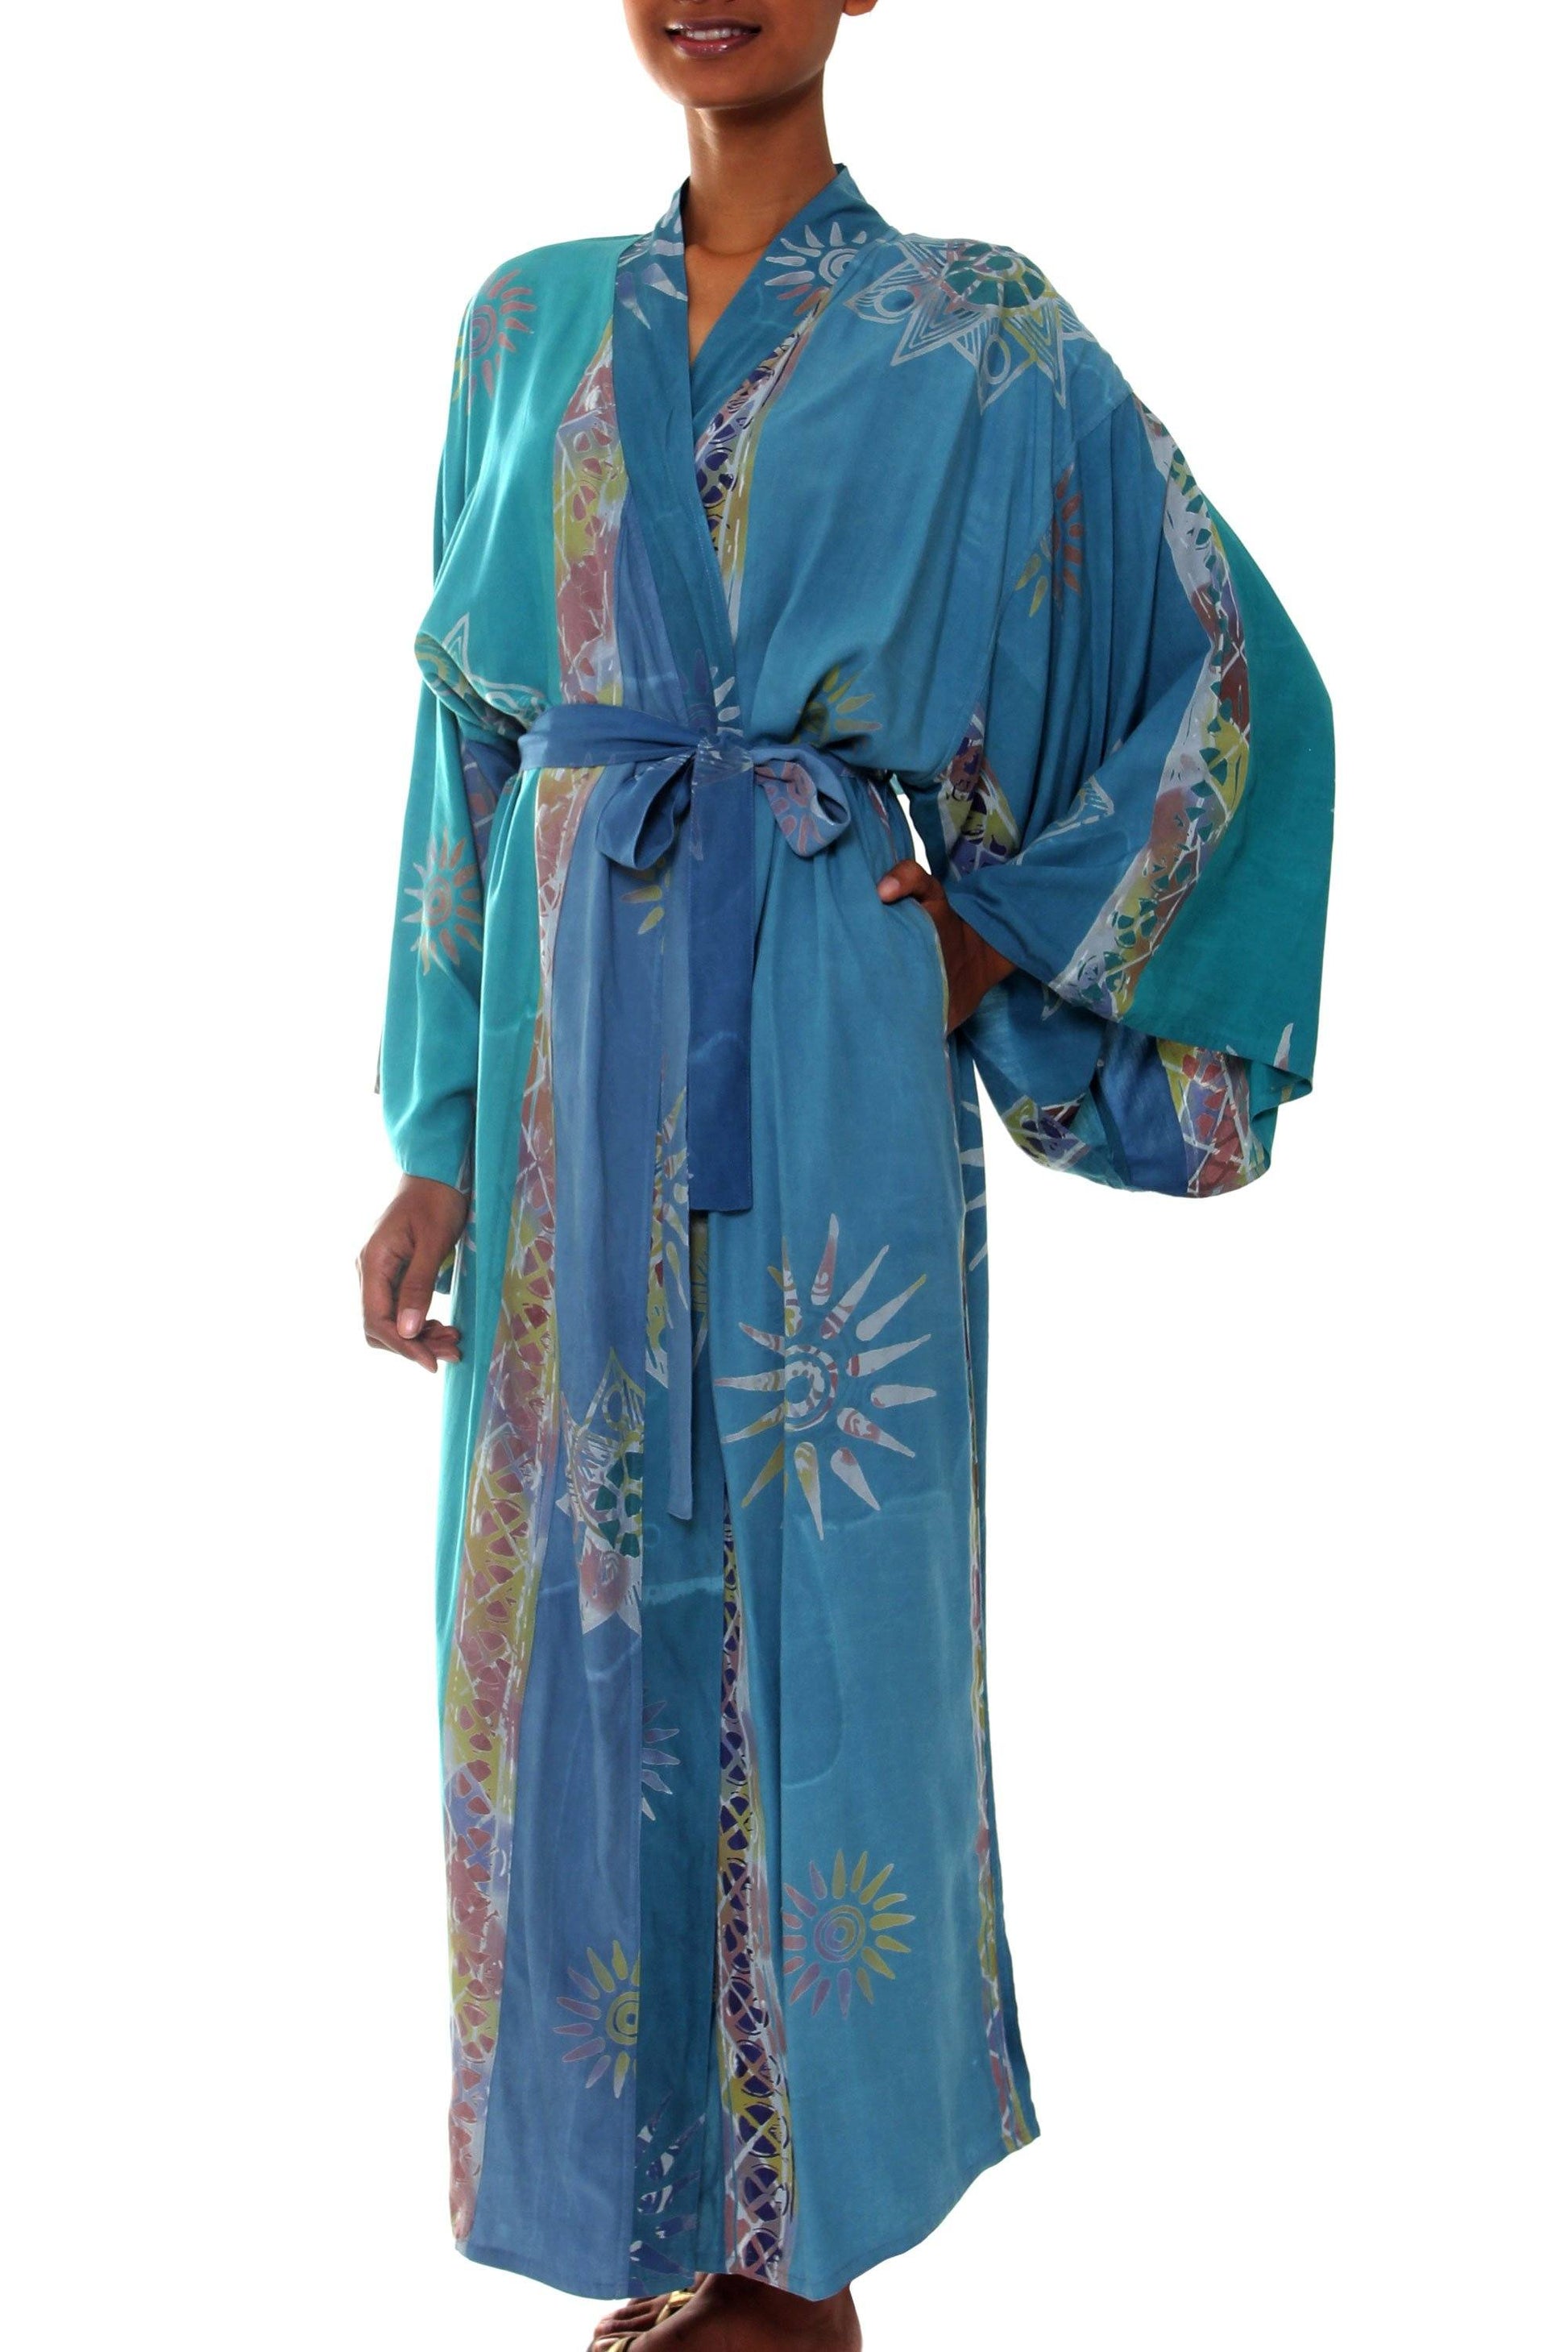 NOVICA - Women's Floral Teal Batik Lightweight Robe